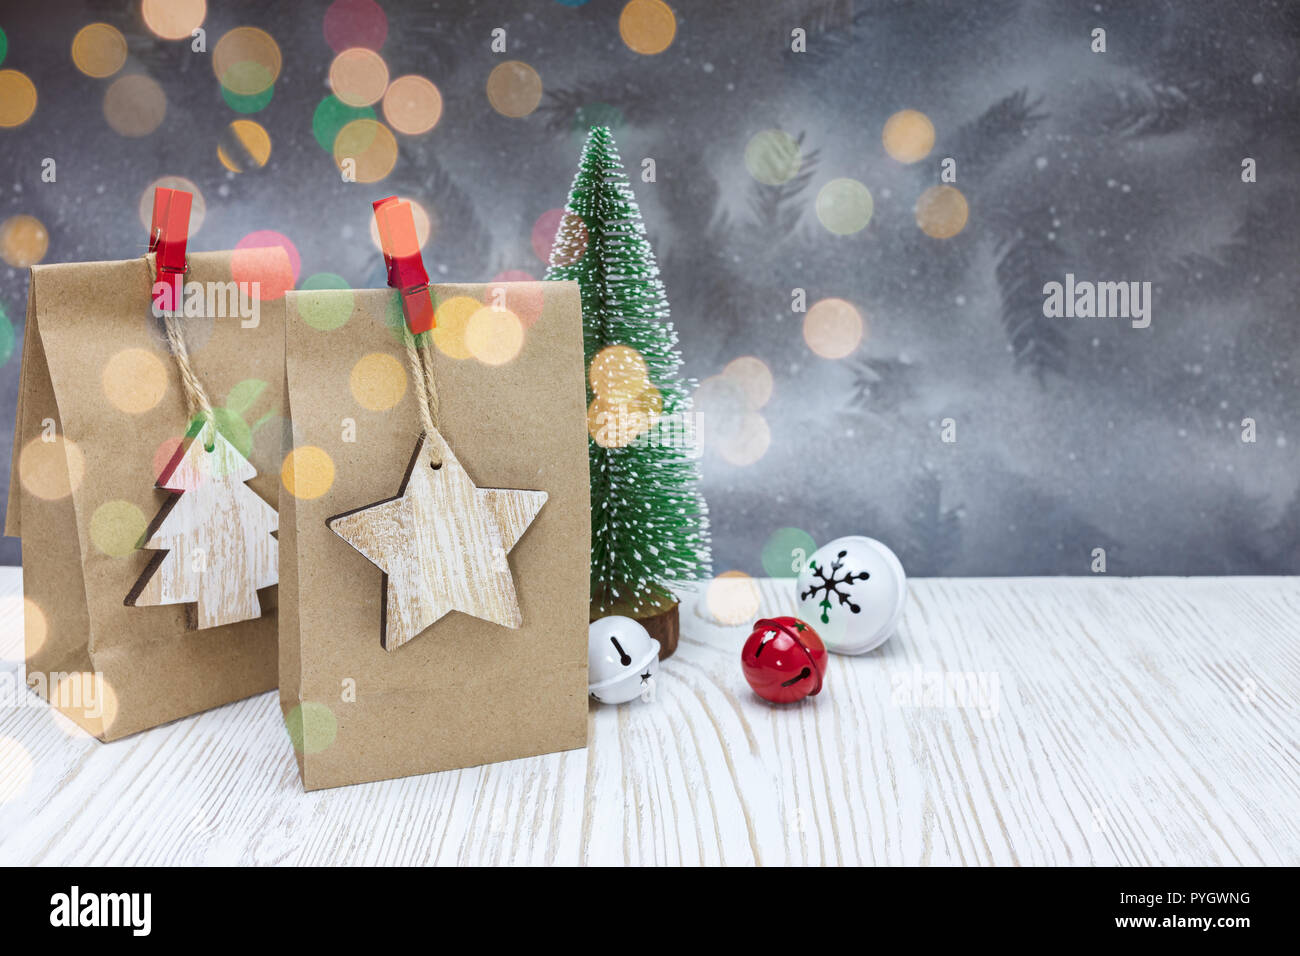 Natale Jingle Bells e carta buste regalo con piccoli abeti festosa su sfondo argento Foto Stock